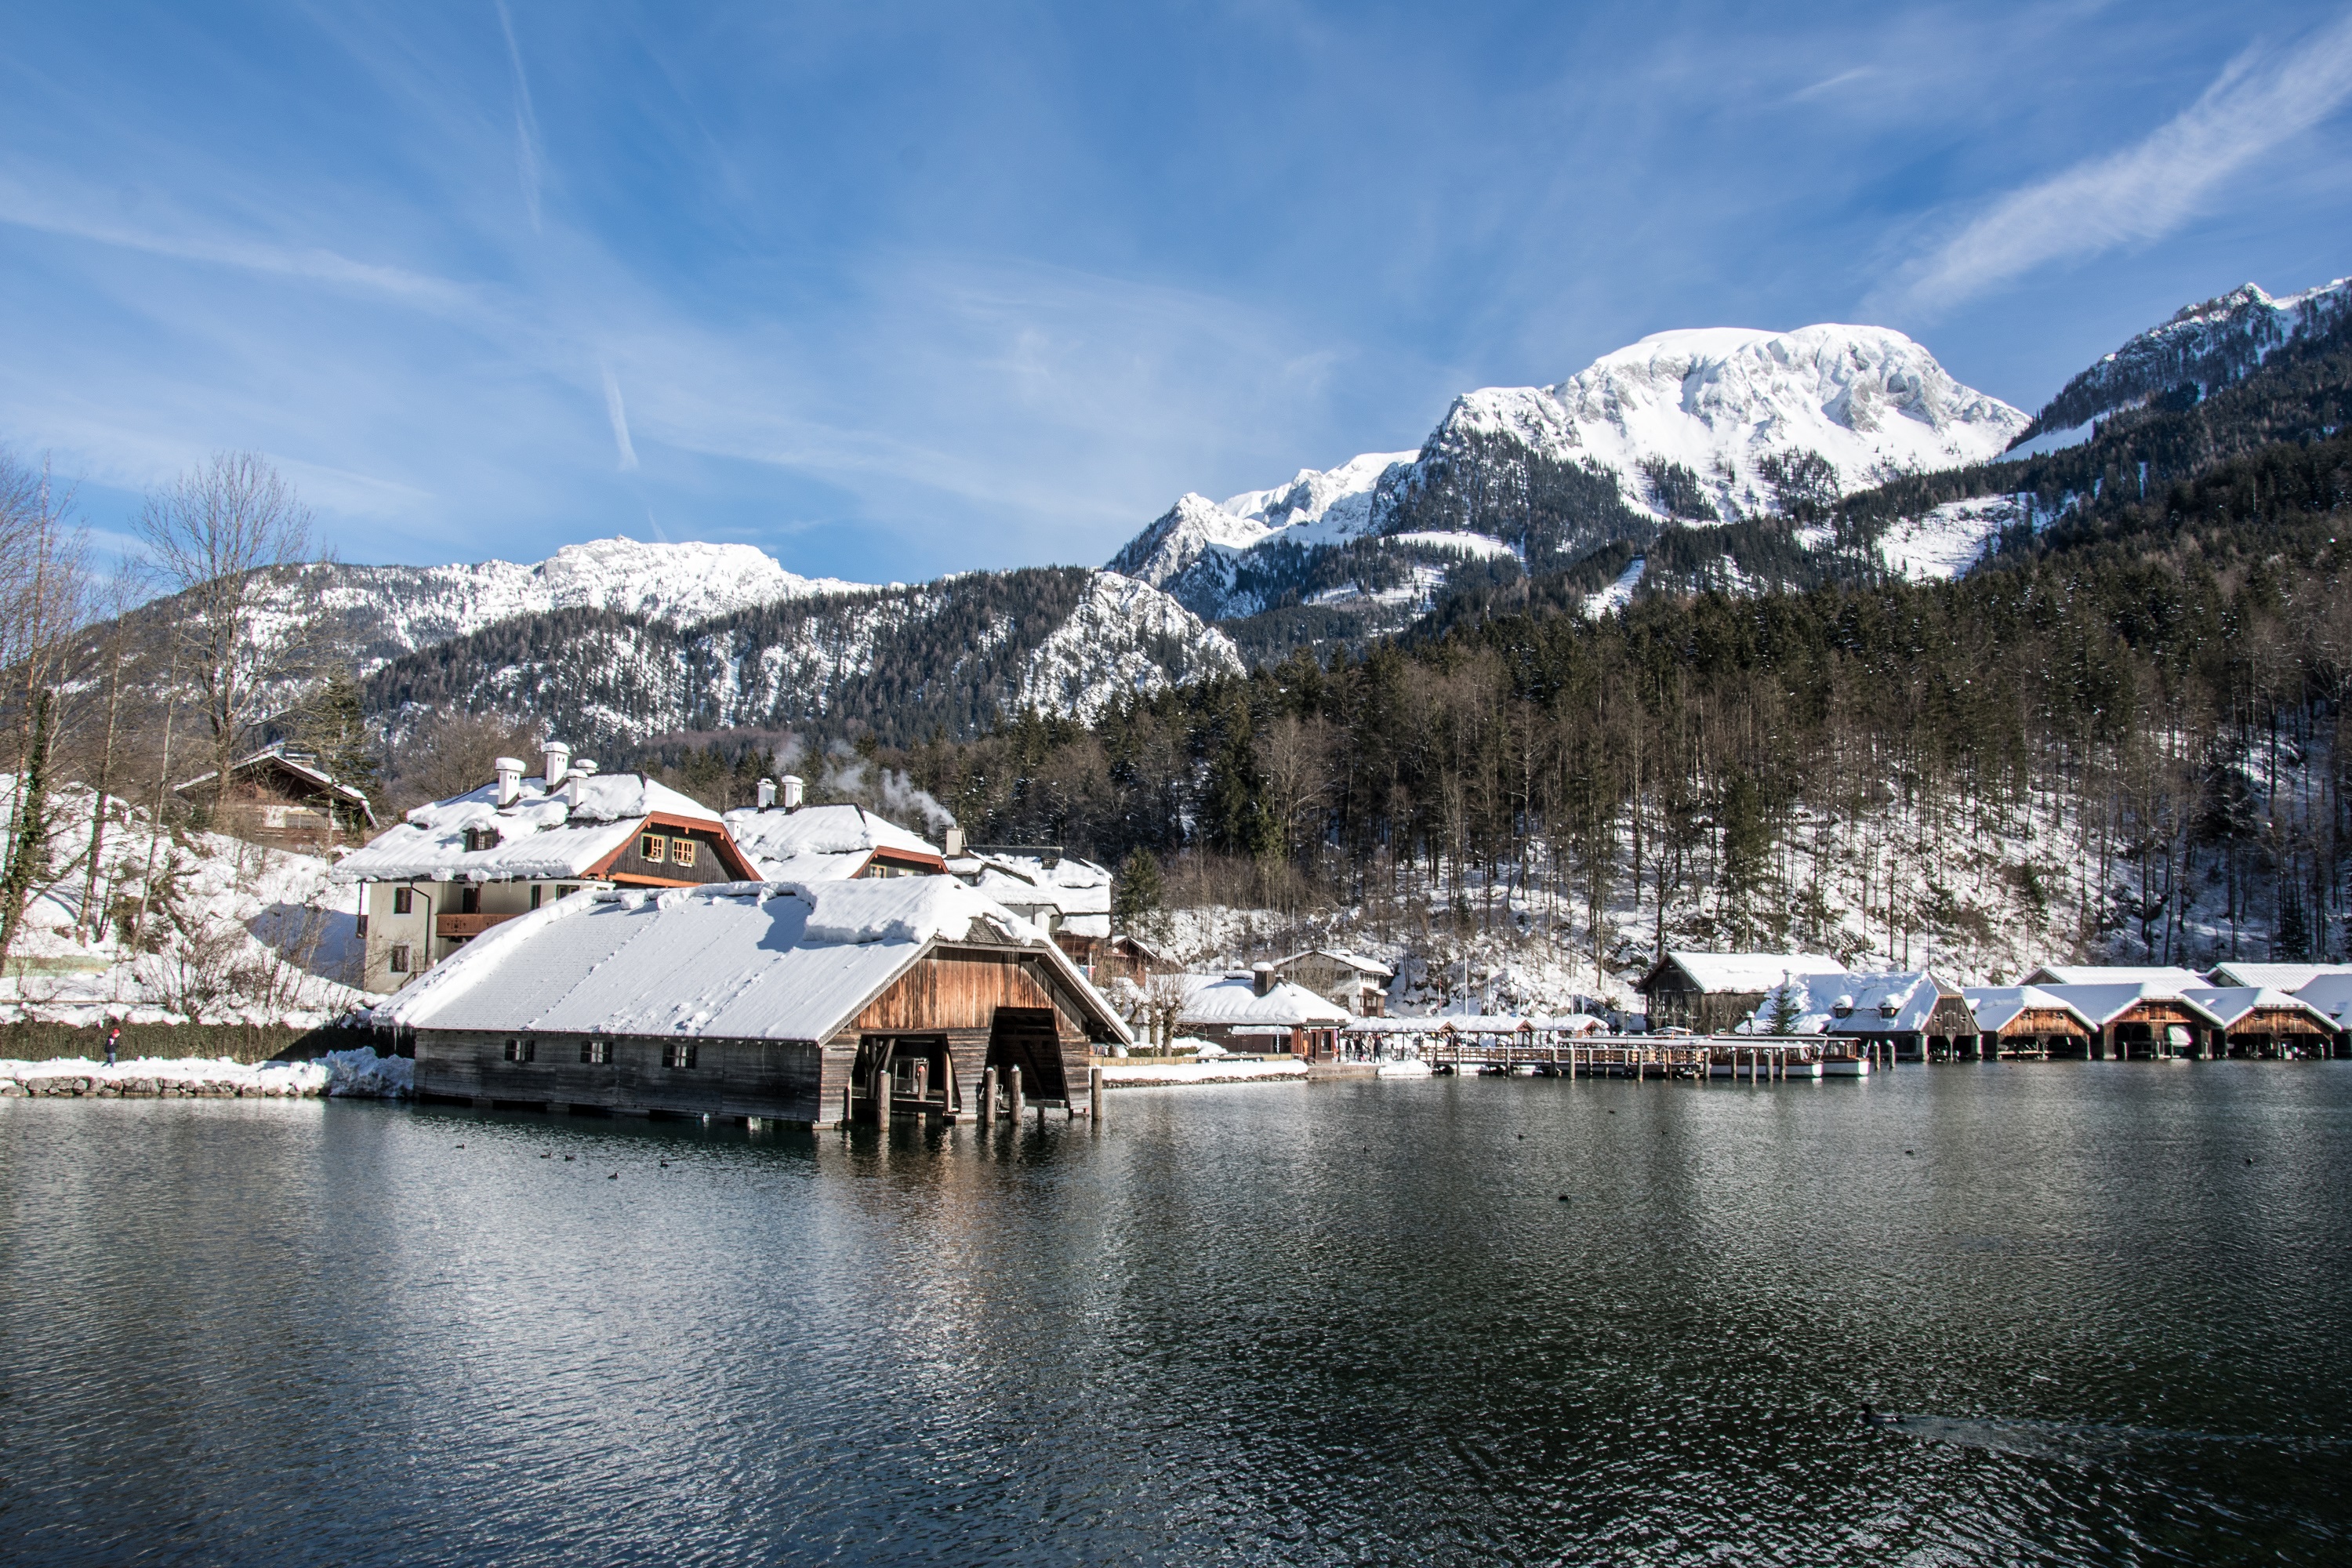 Wandern im Schnee - unsere 7 schönsten Orte in Deutschland!